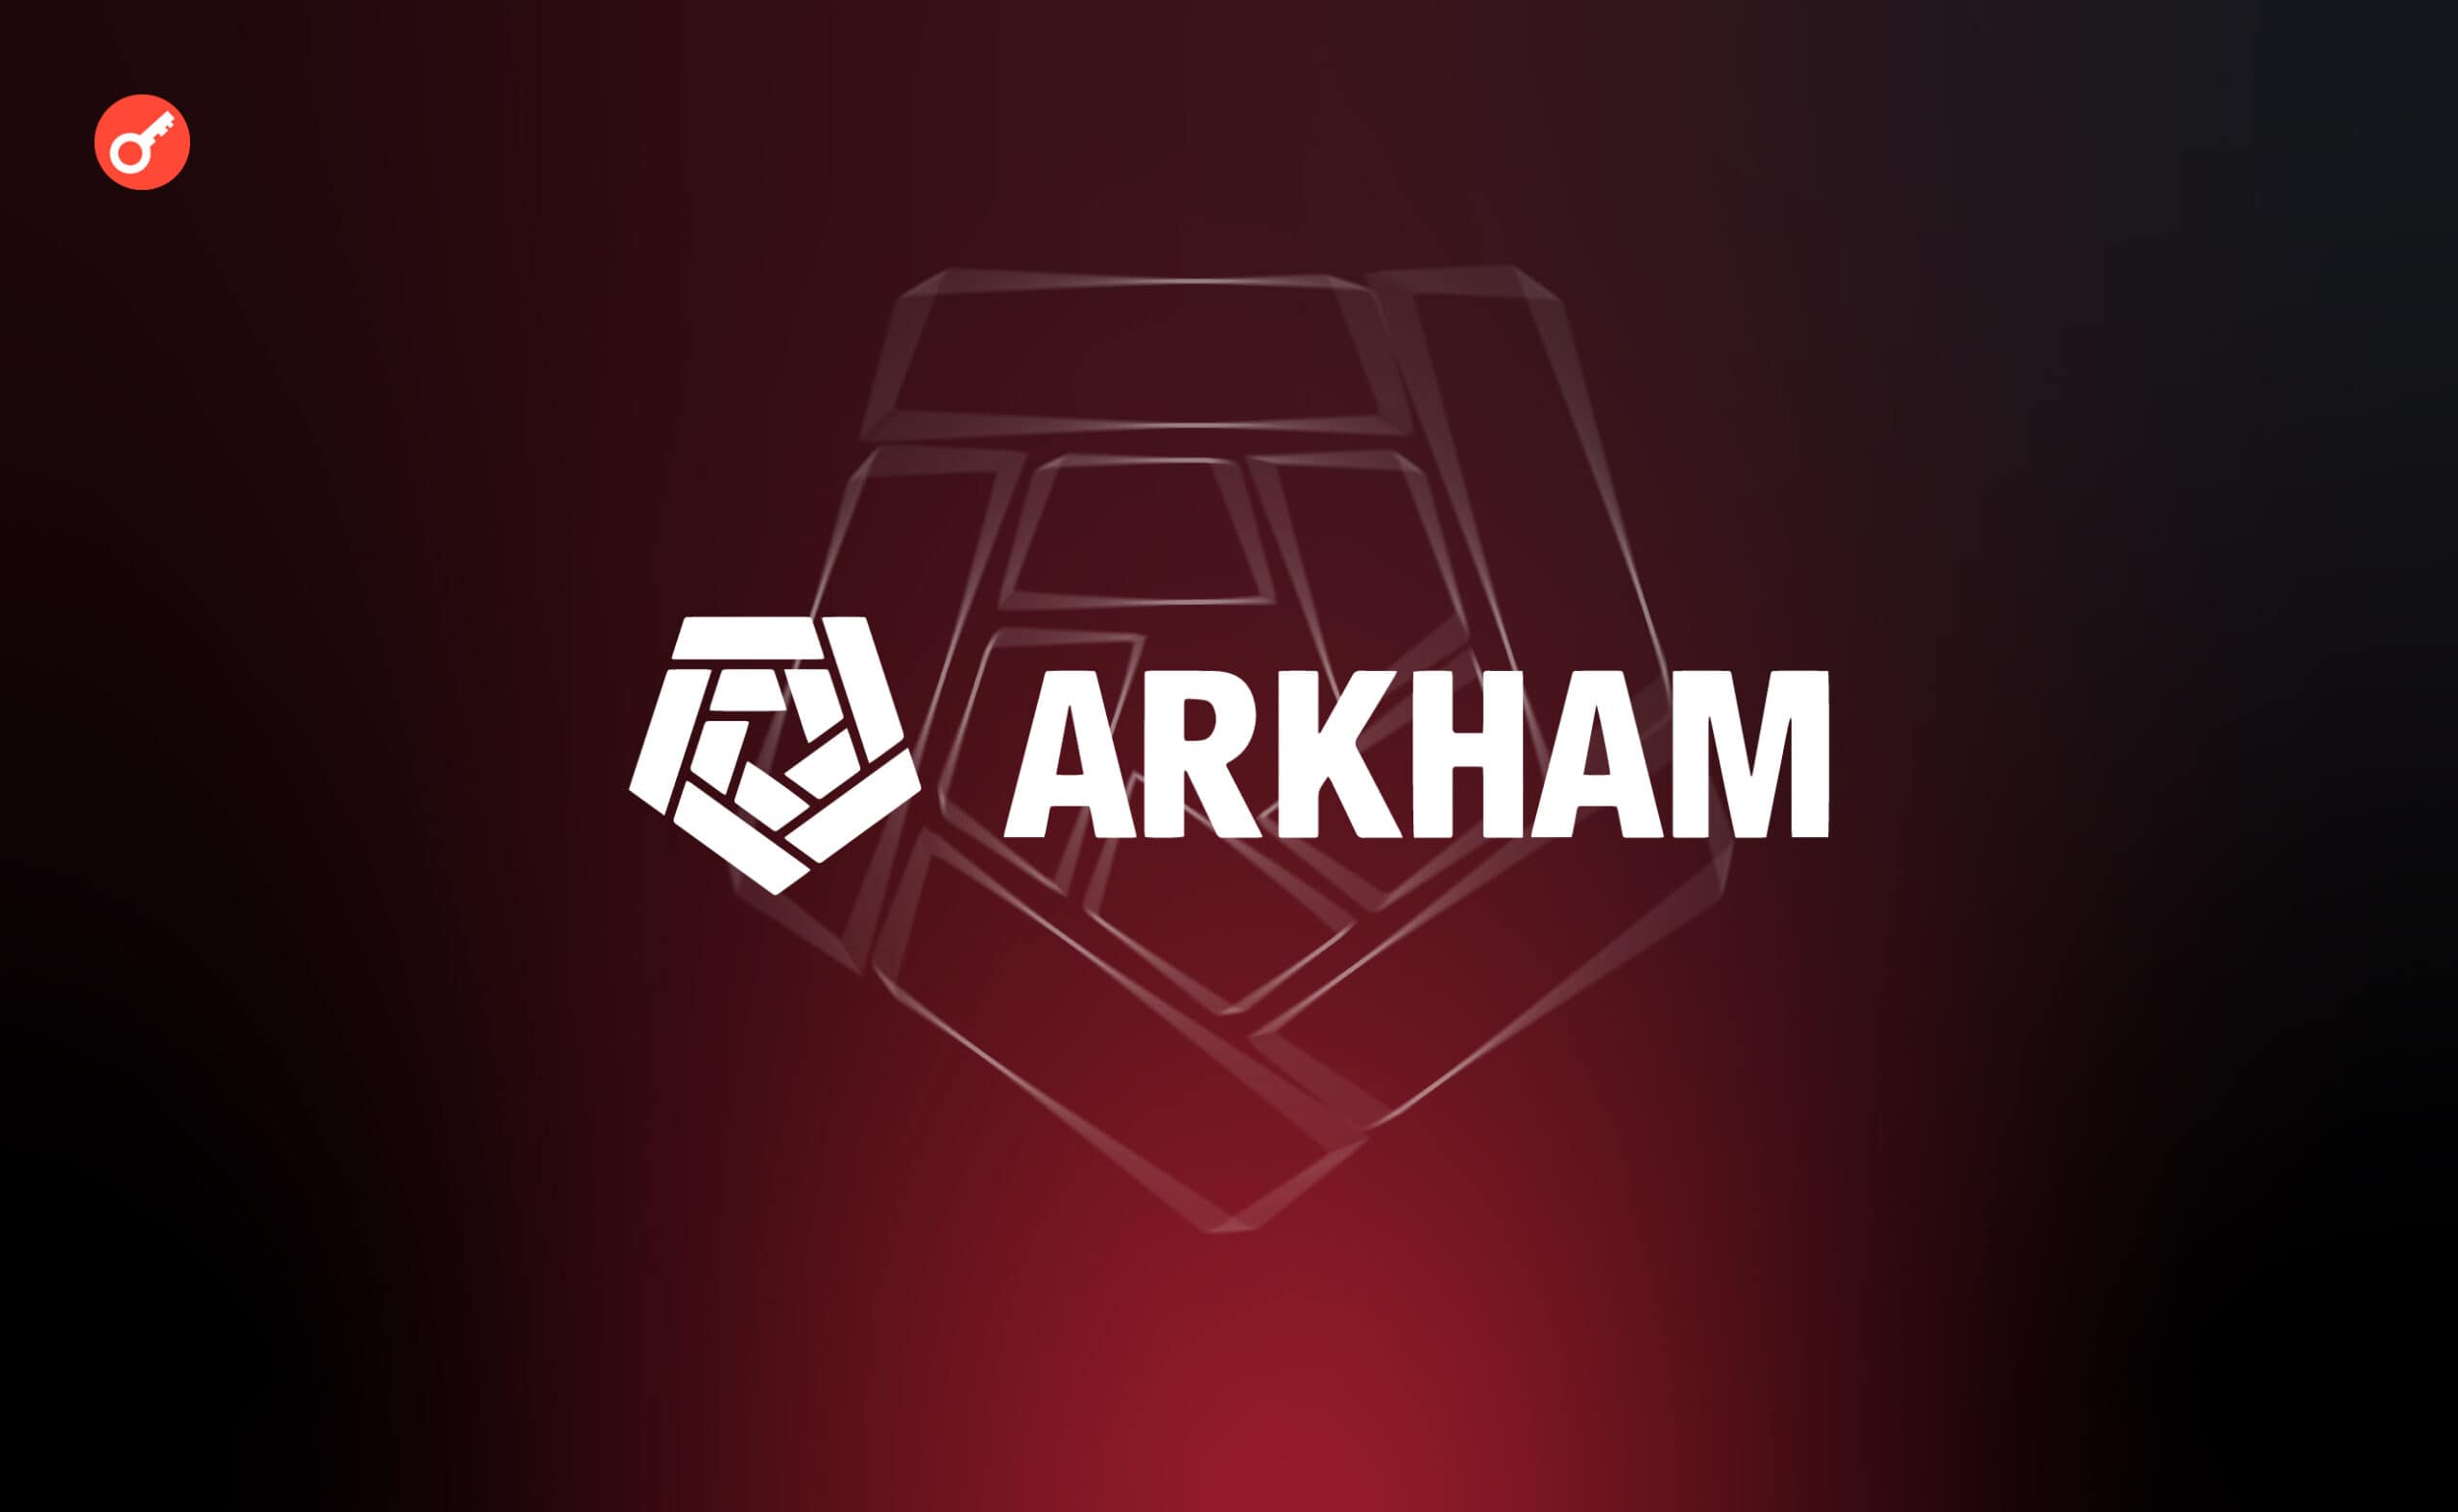 В Arkham предложили награду в $150 000 за информацию о создателе DJT. Заглавный коллаж новости.